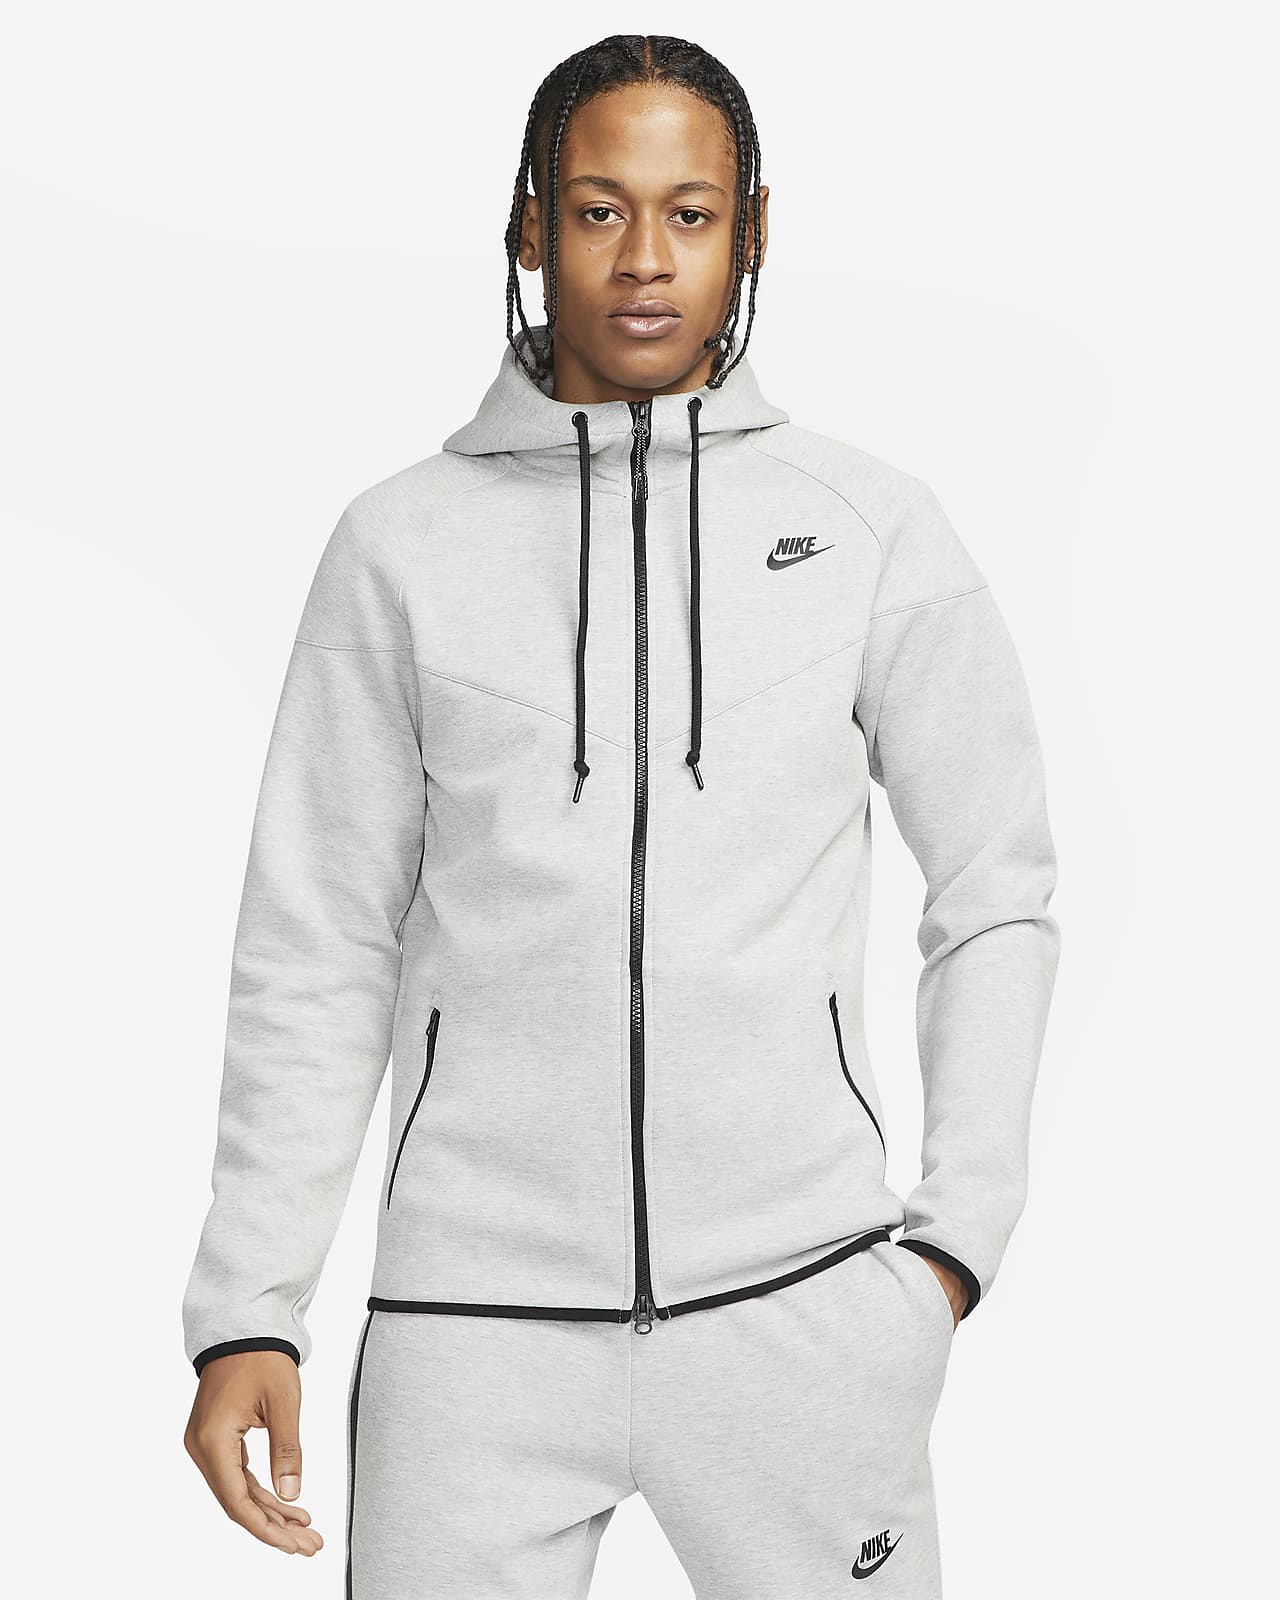 låg Lover legeplads Nike Sportswear Tech Fleece OG Men's Full-Zip Hoodie Sweatshirt. Nike LU